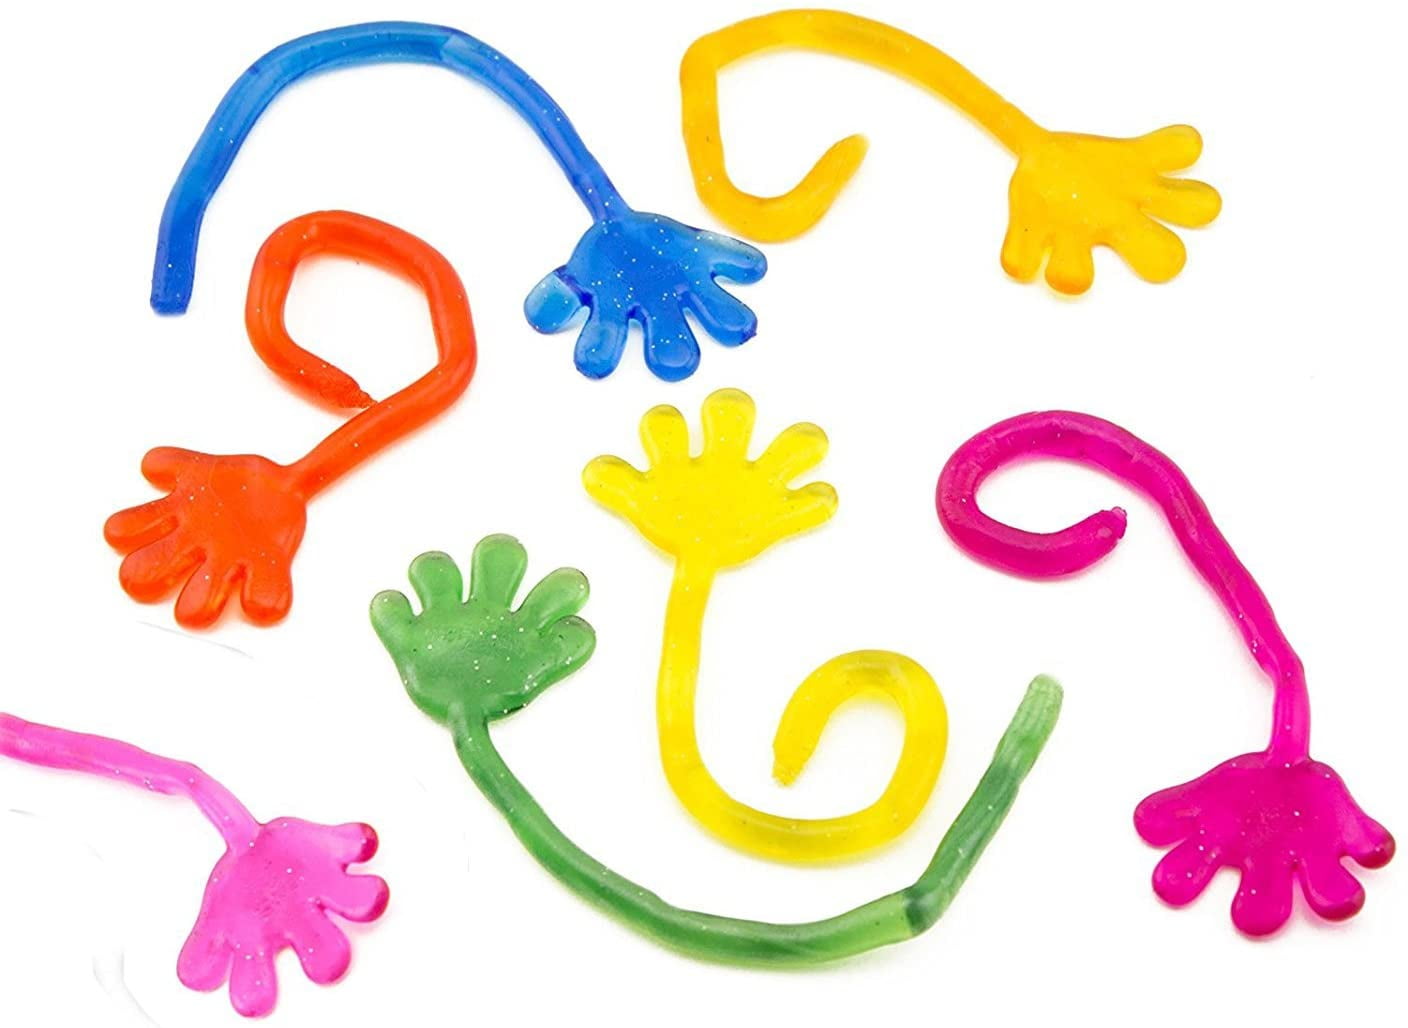 10pcs Novelty Vinyl Sticky Hands For Kids Glittery Fun Color